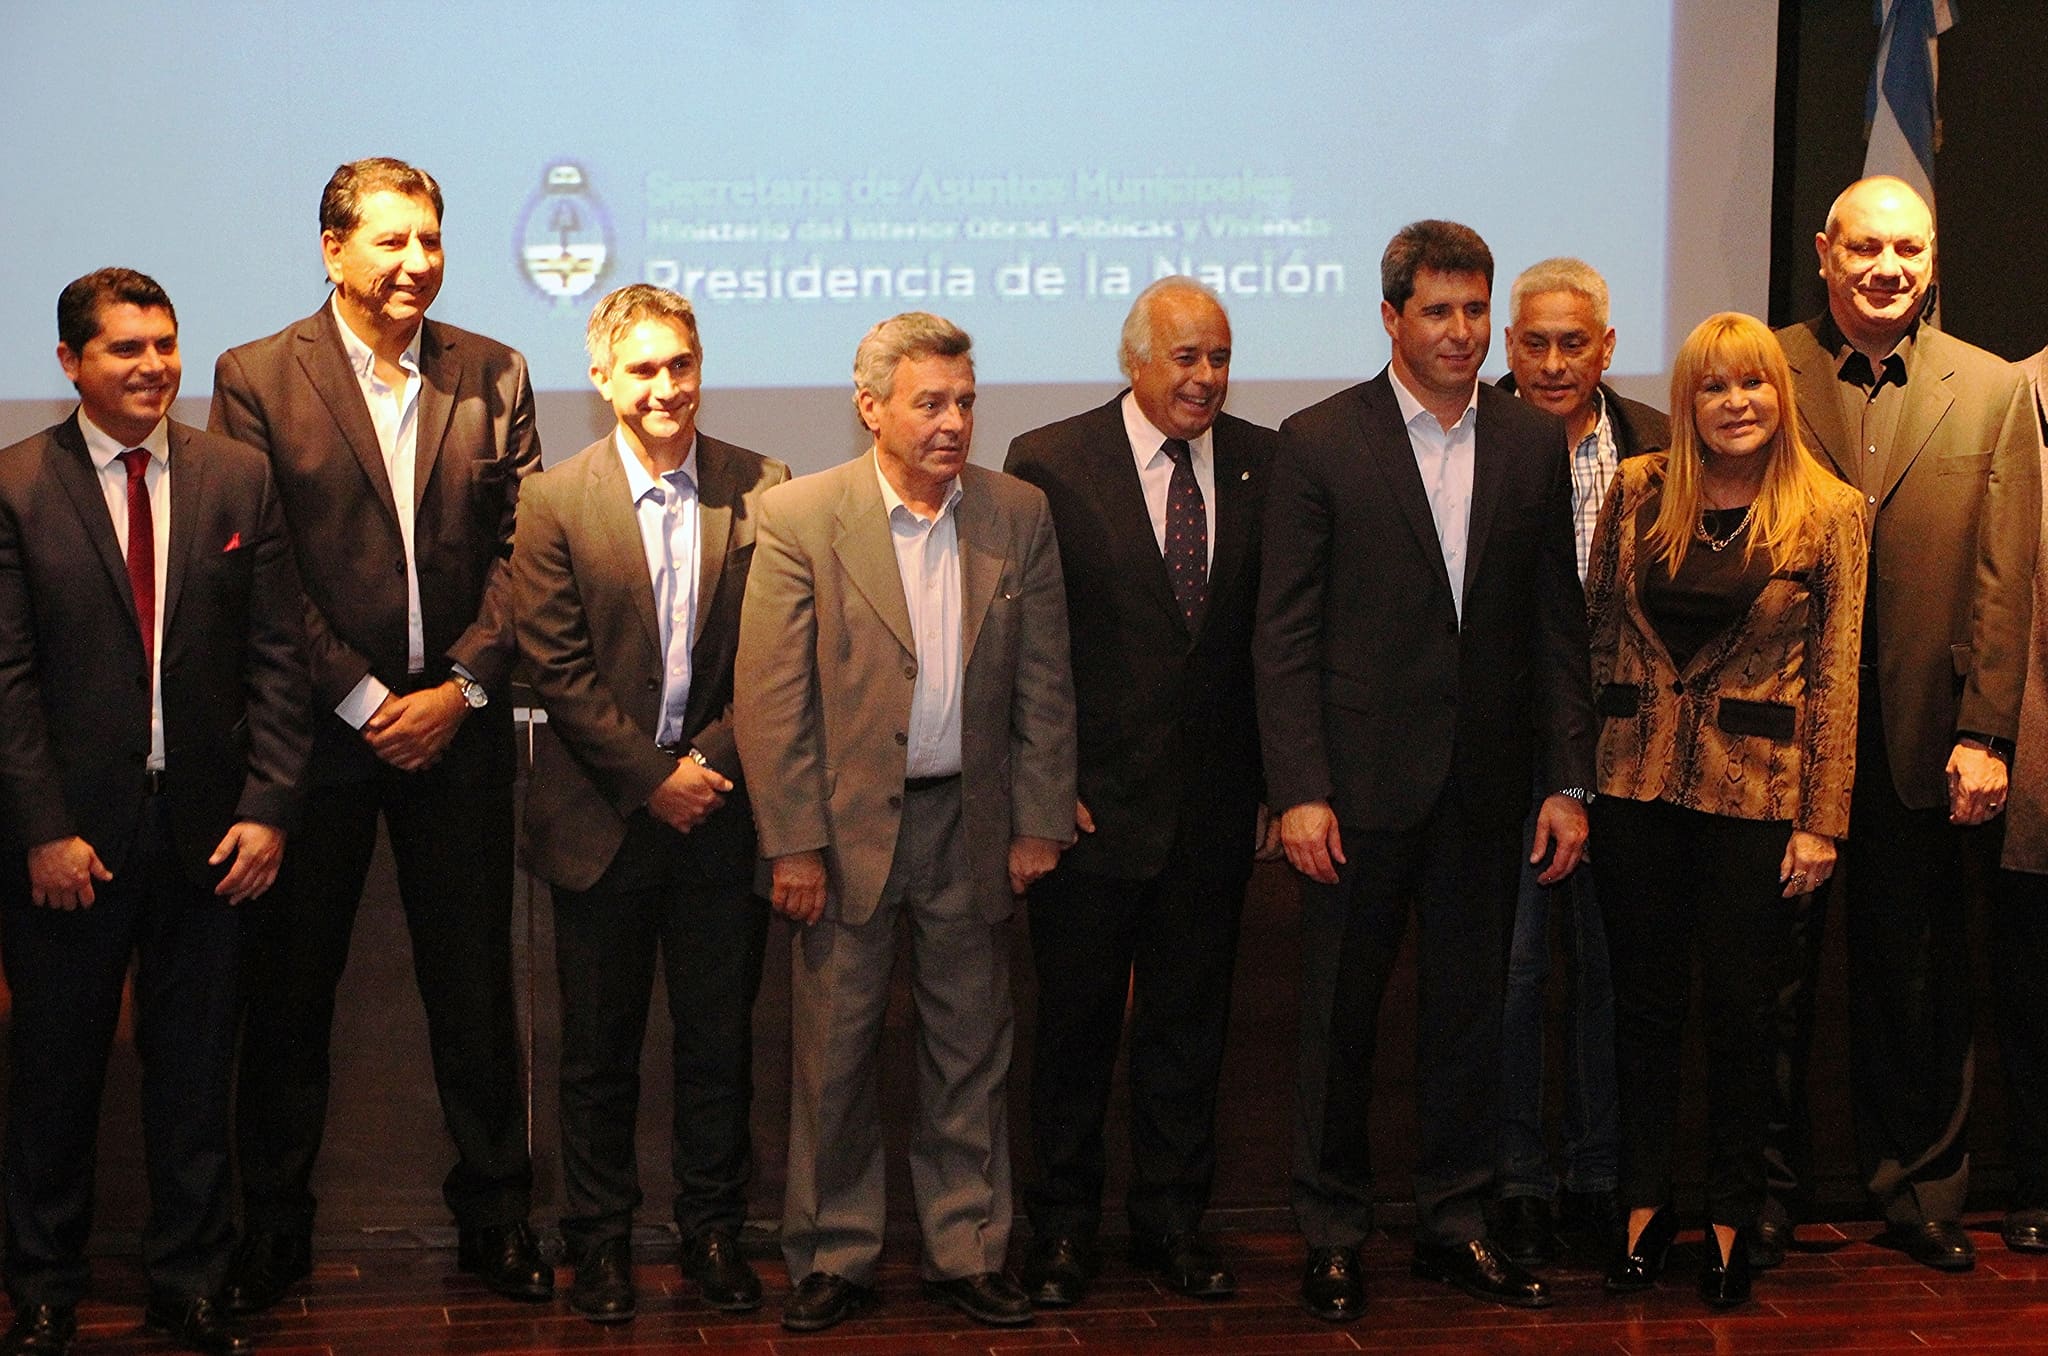 El vicegobernador Marcelo Lima en la apertura de la “Jornada de Articulación Federal con los Municipios”.  